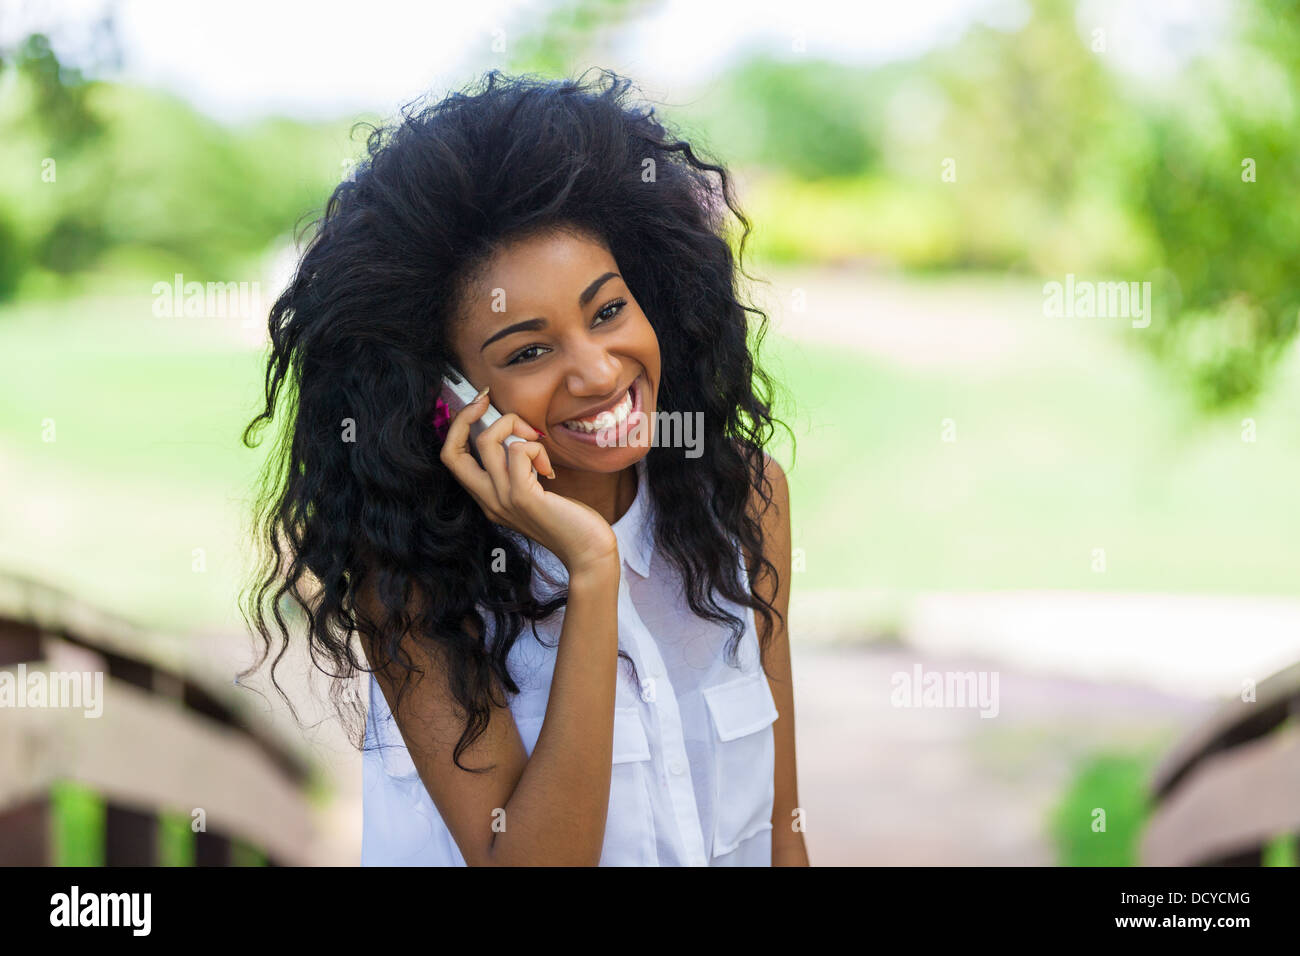 Adolescente sorridente ragazza nera utilizzando un telefono cellulare - popolo africano Foto Stock